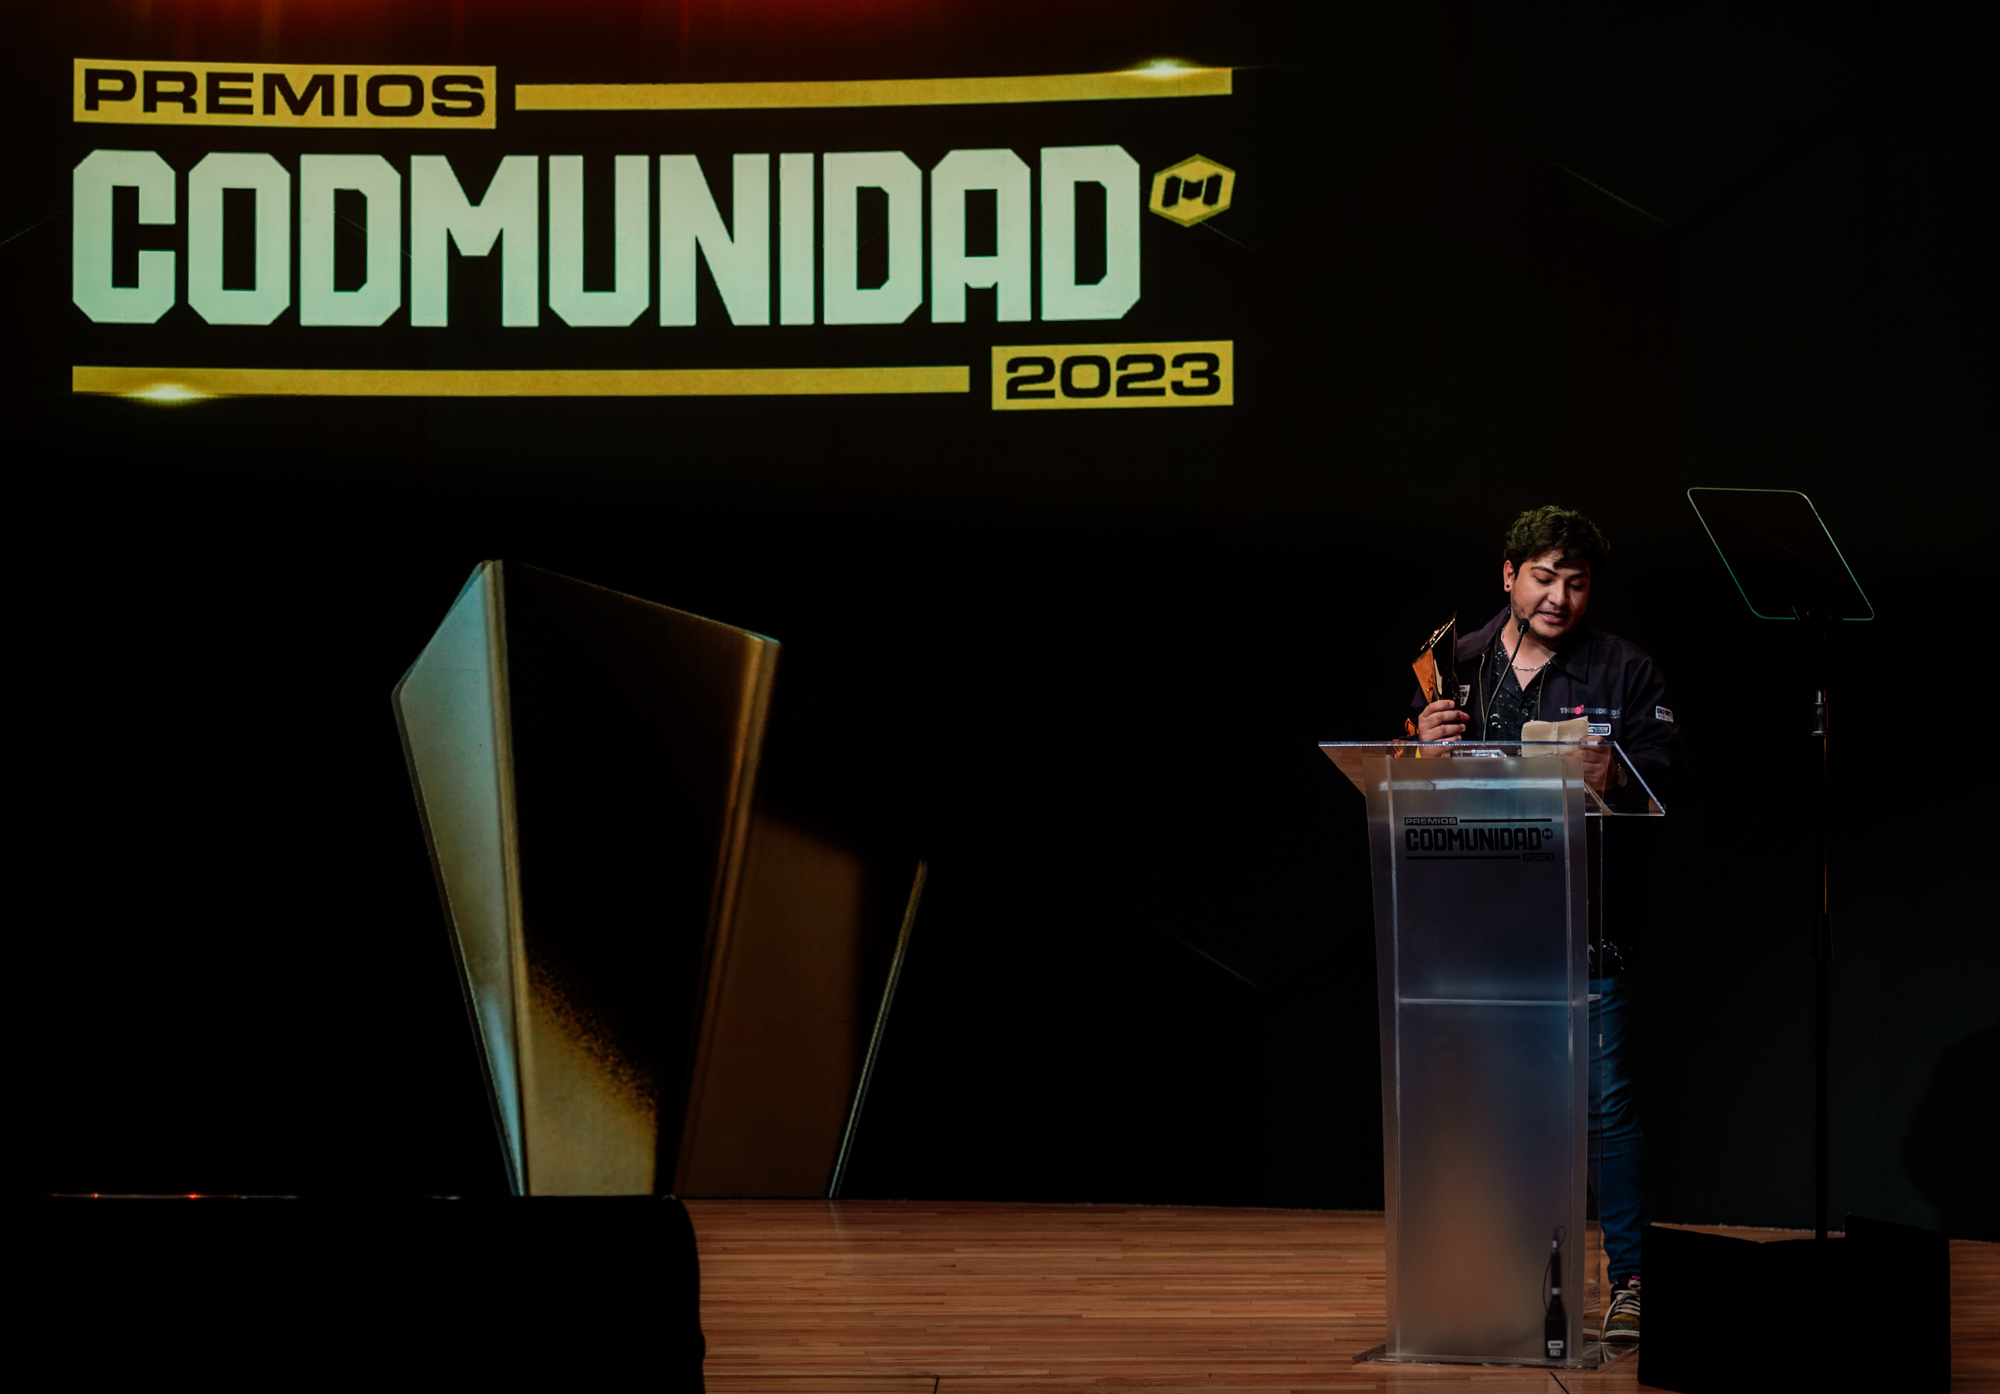 Premios CODMUNIDAD 2023 en Ciudad de México 4